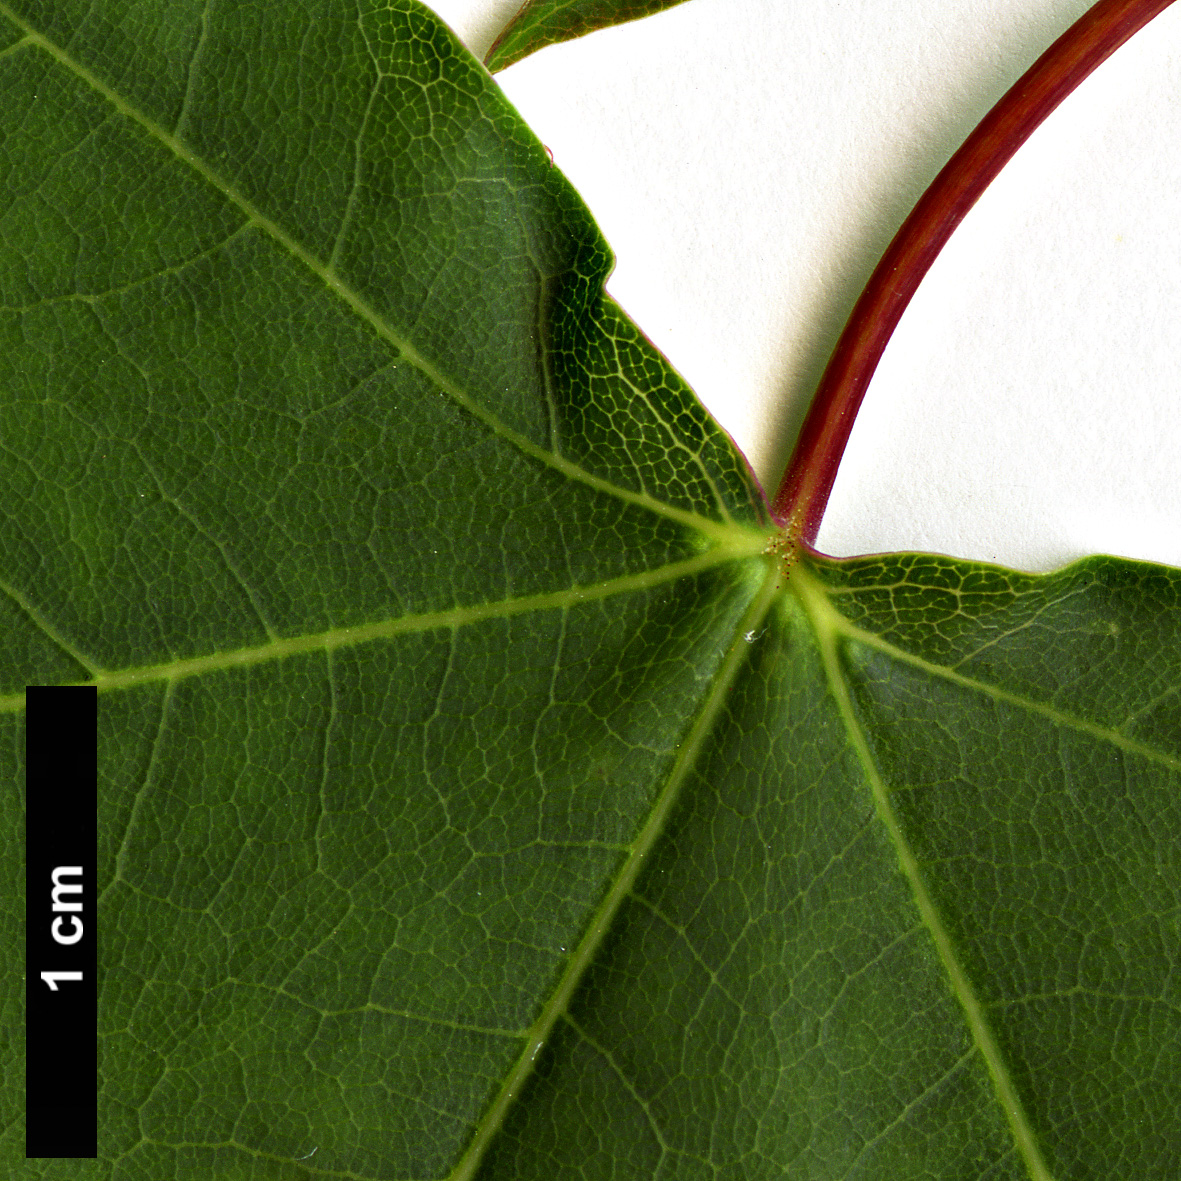 High resolution image: Family: Sapindaceae - Genus: Acer - Taxon: shenkanense 